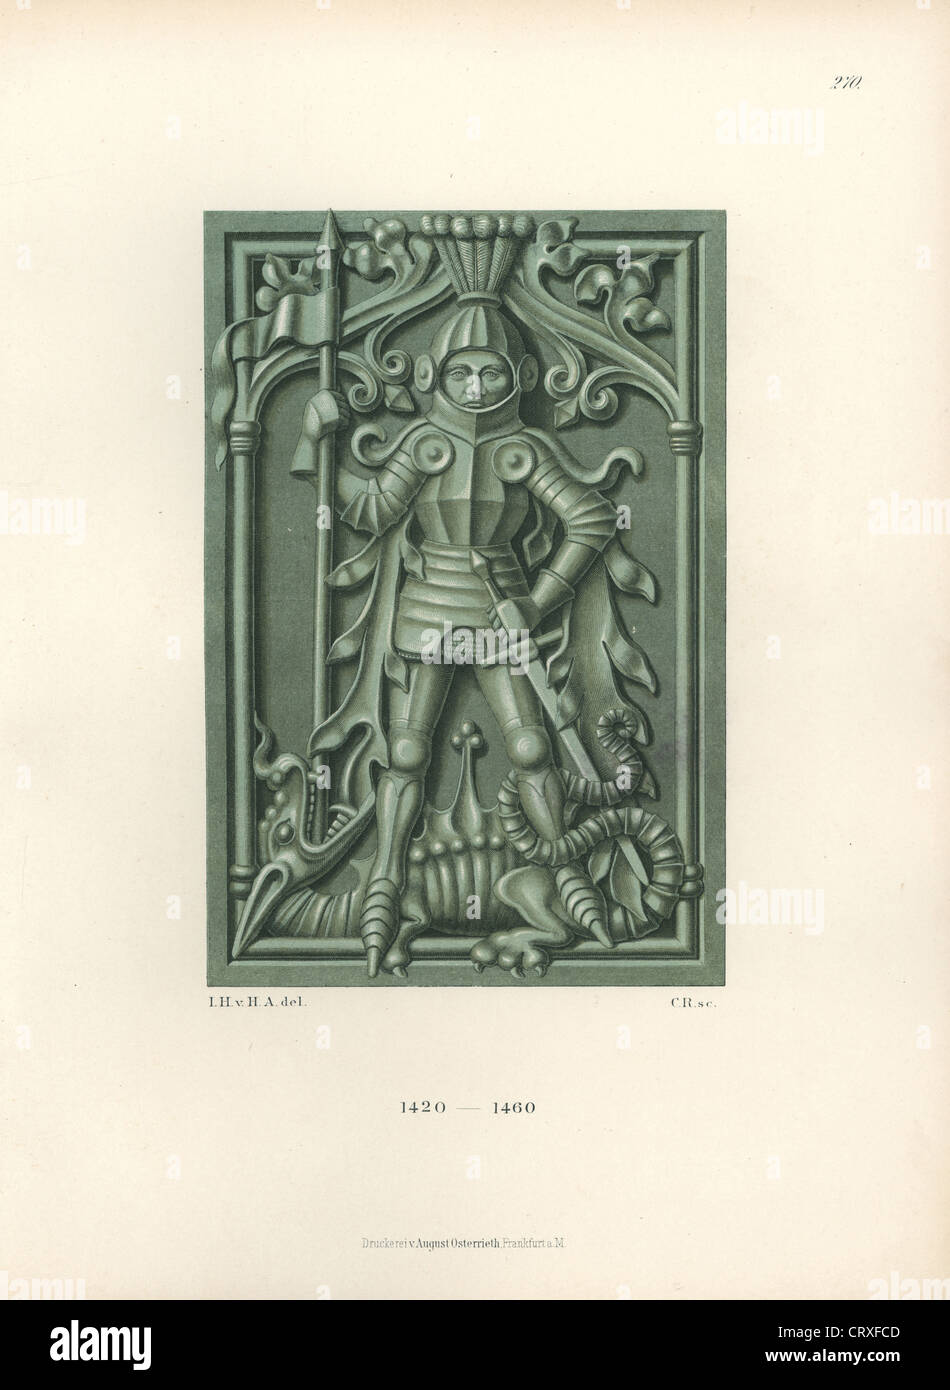 Ritter in Rüstung mit Schwert und Lanze aus der Mitte des 15. Jahrhunderts stand triumphierend über einen Erschlagenen Drachen. Stockfoto